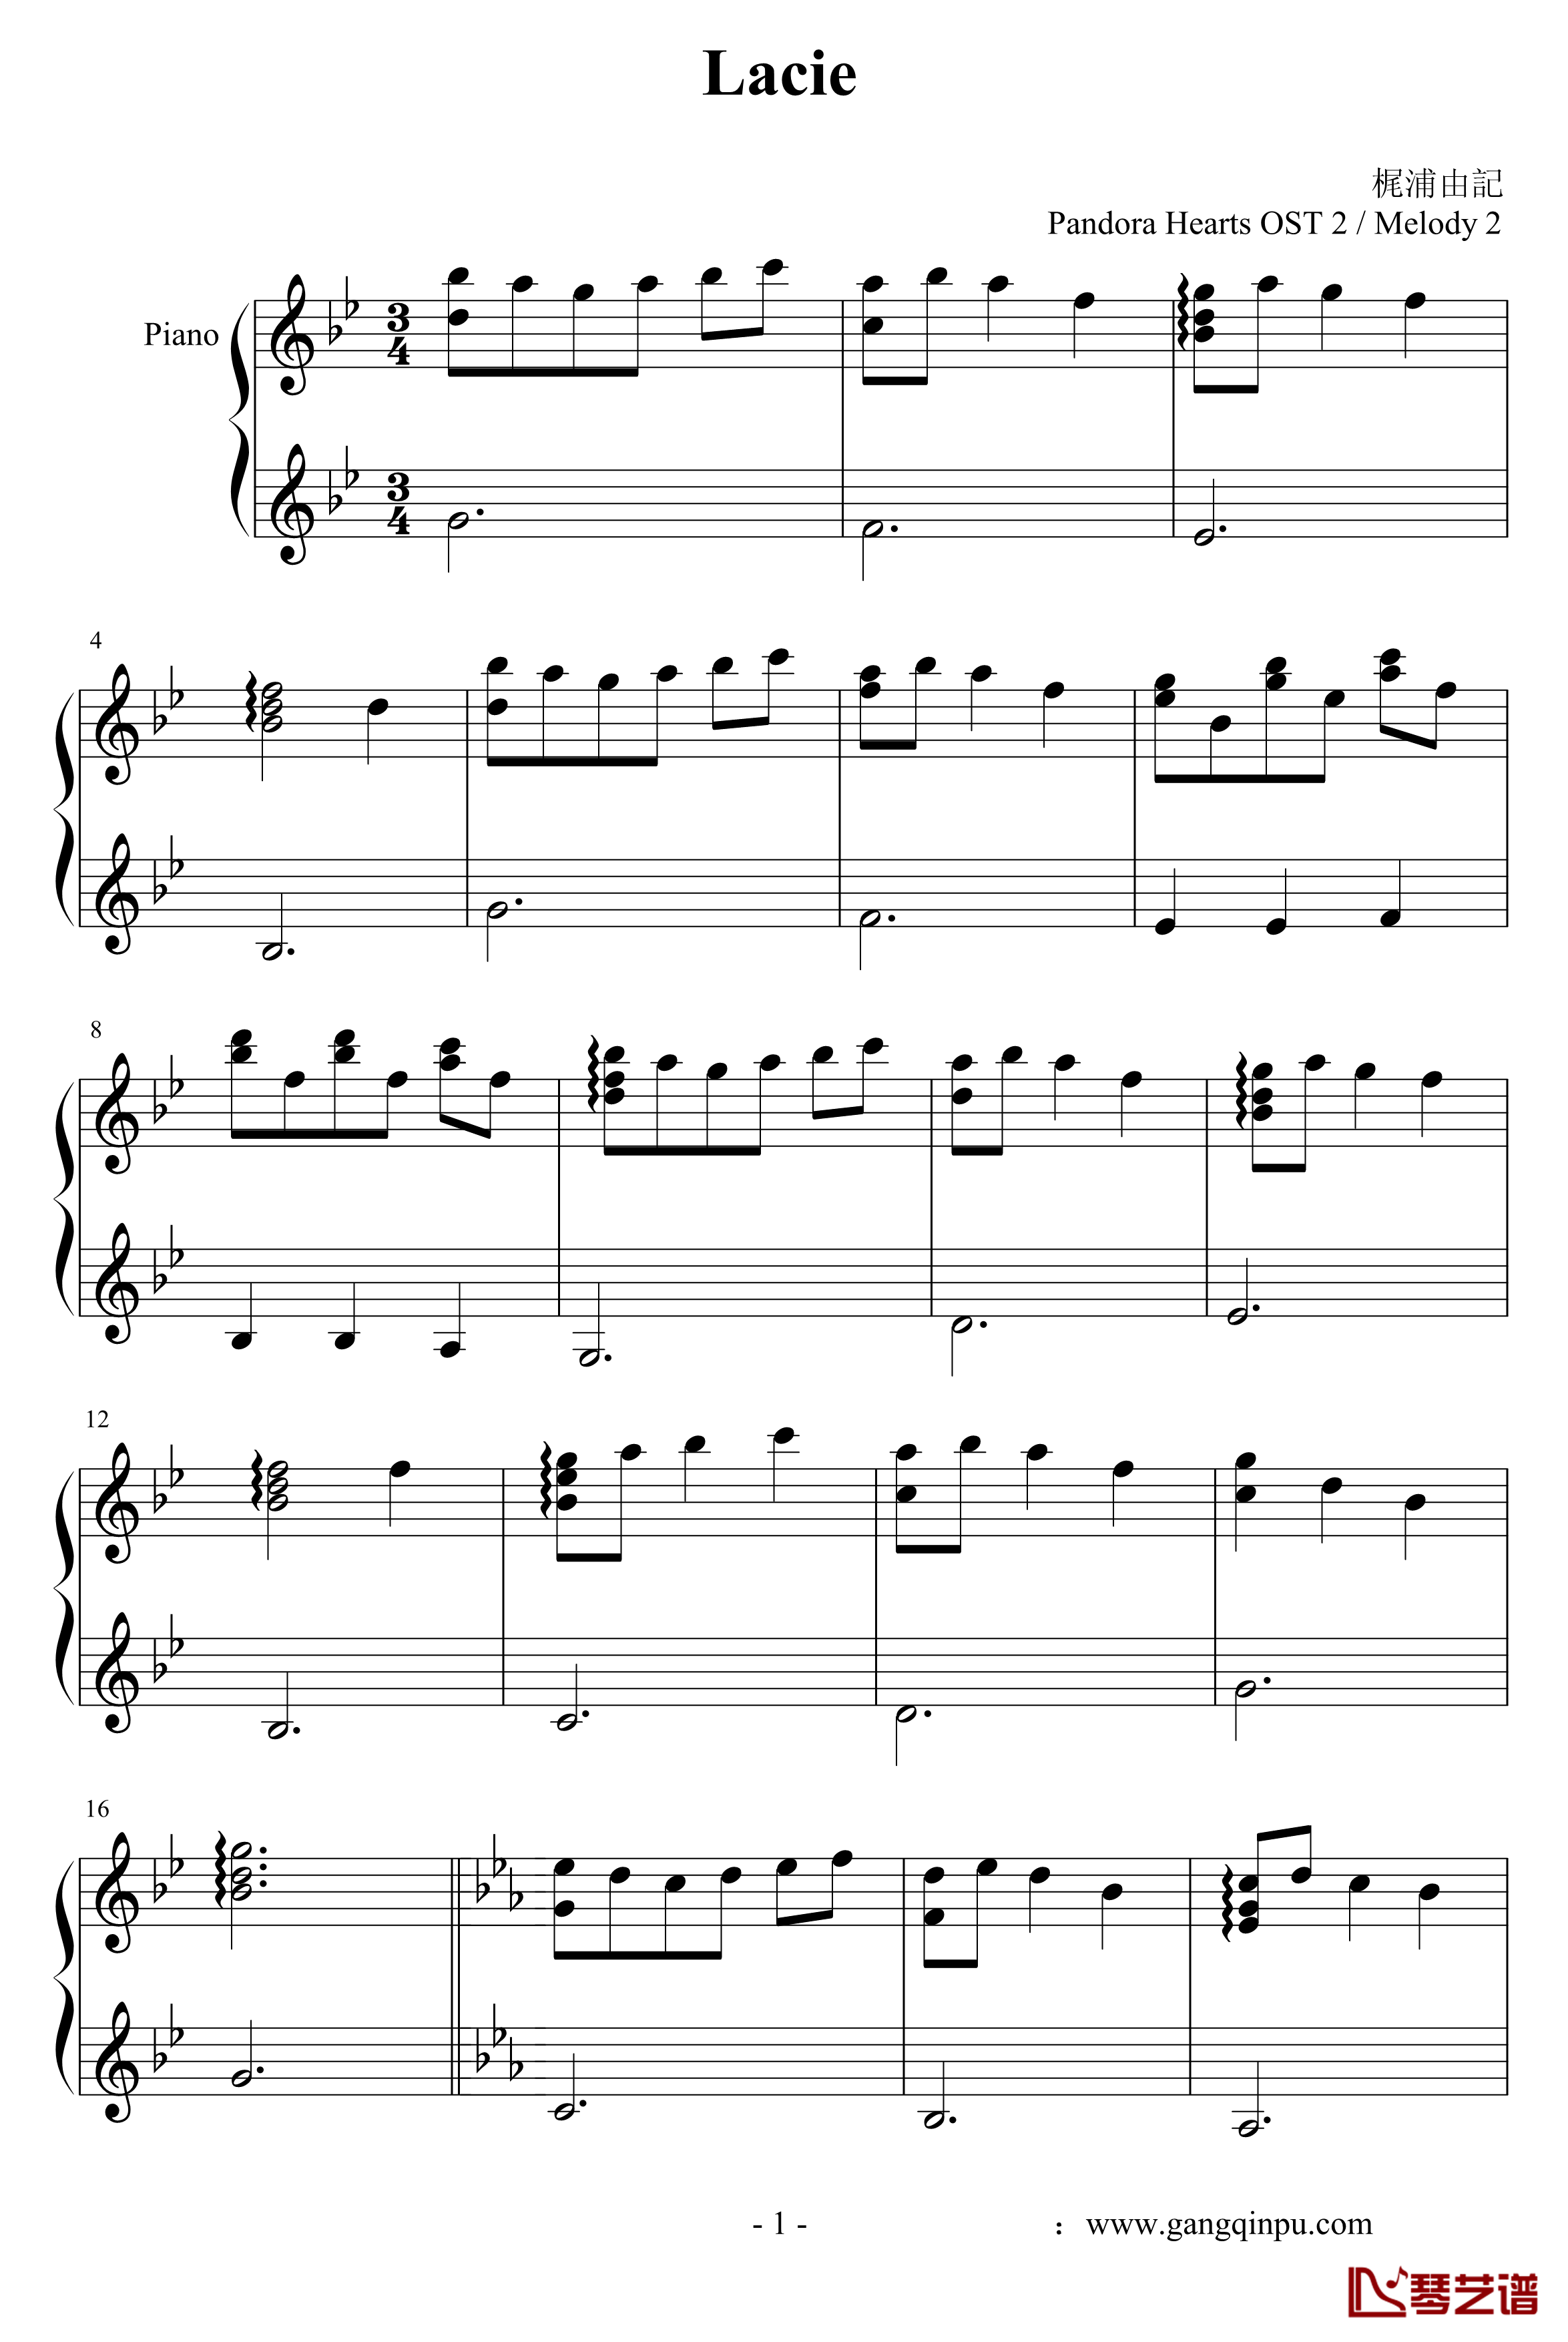 蕾西钢琴谱-lacie-潘多拉之心-尾浦游纪1